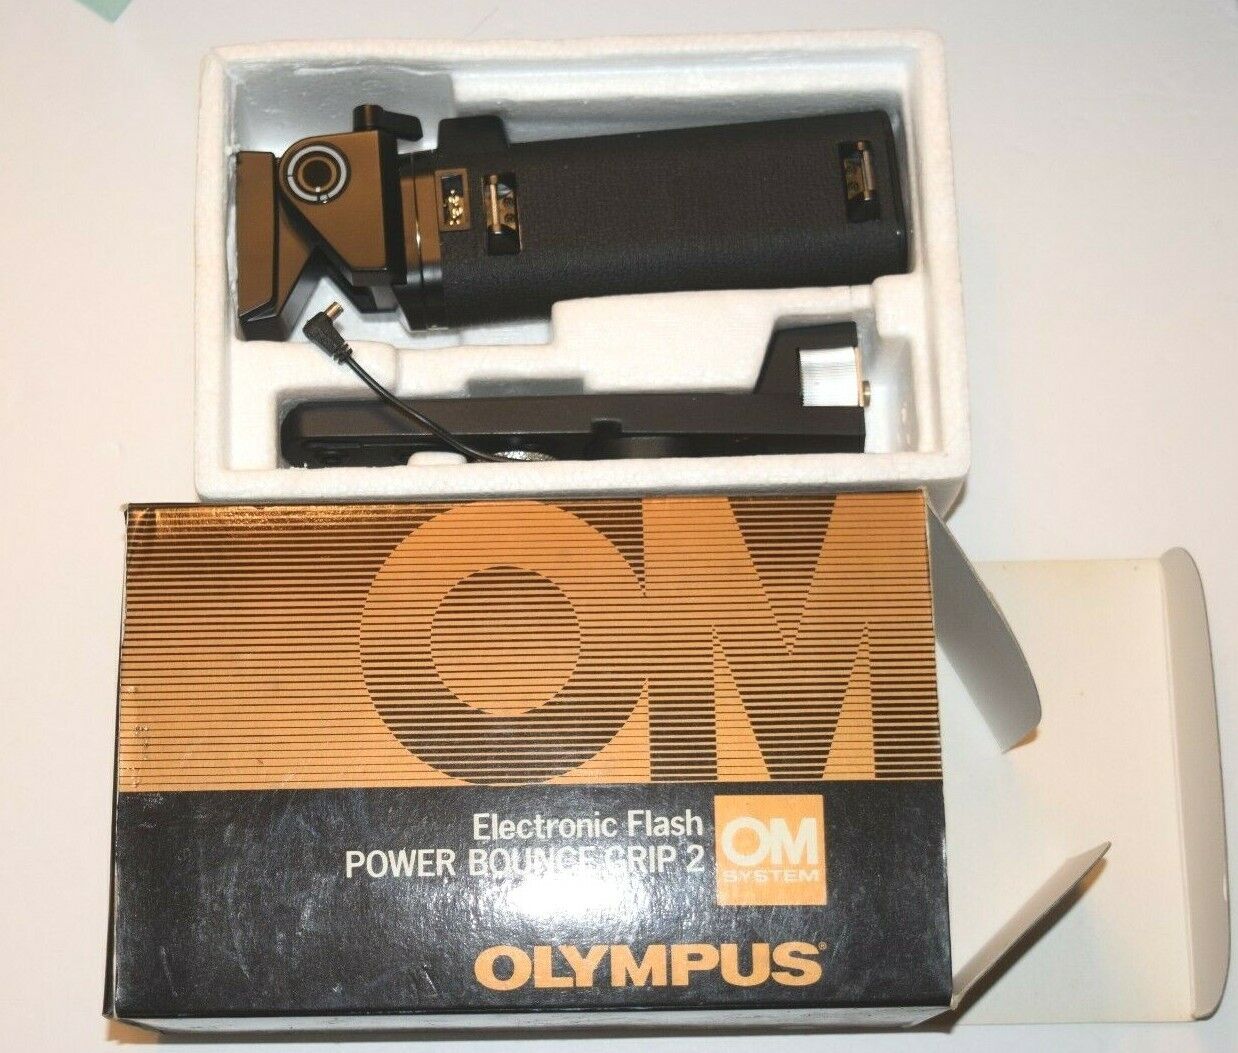 OLYMPUS ELECTRONIC FLASH POWER BOUNCE GRIP 2, OM System, New, in Original Box OLYMPUS NA - фотография #3